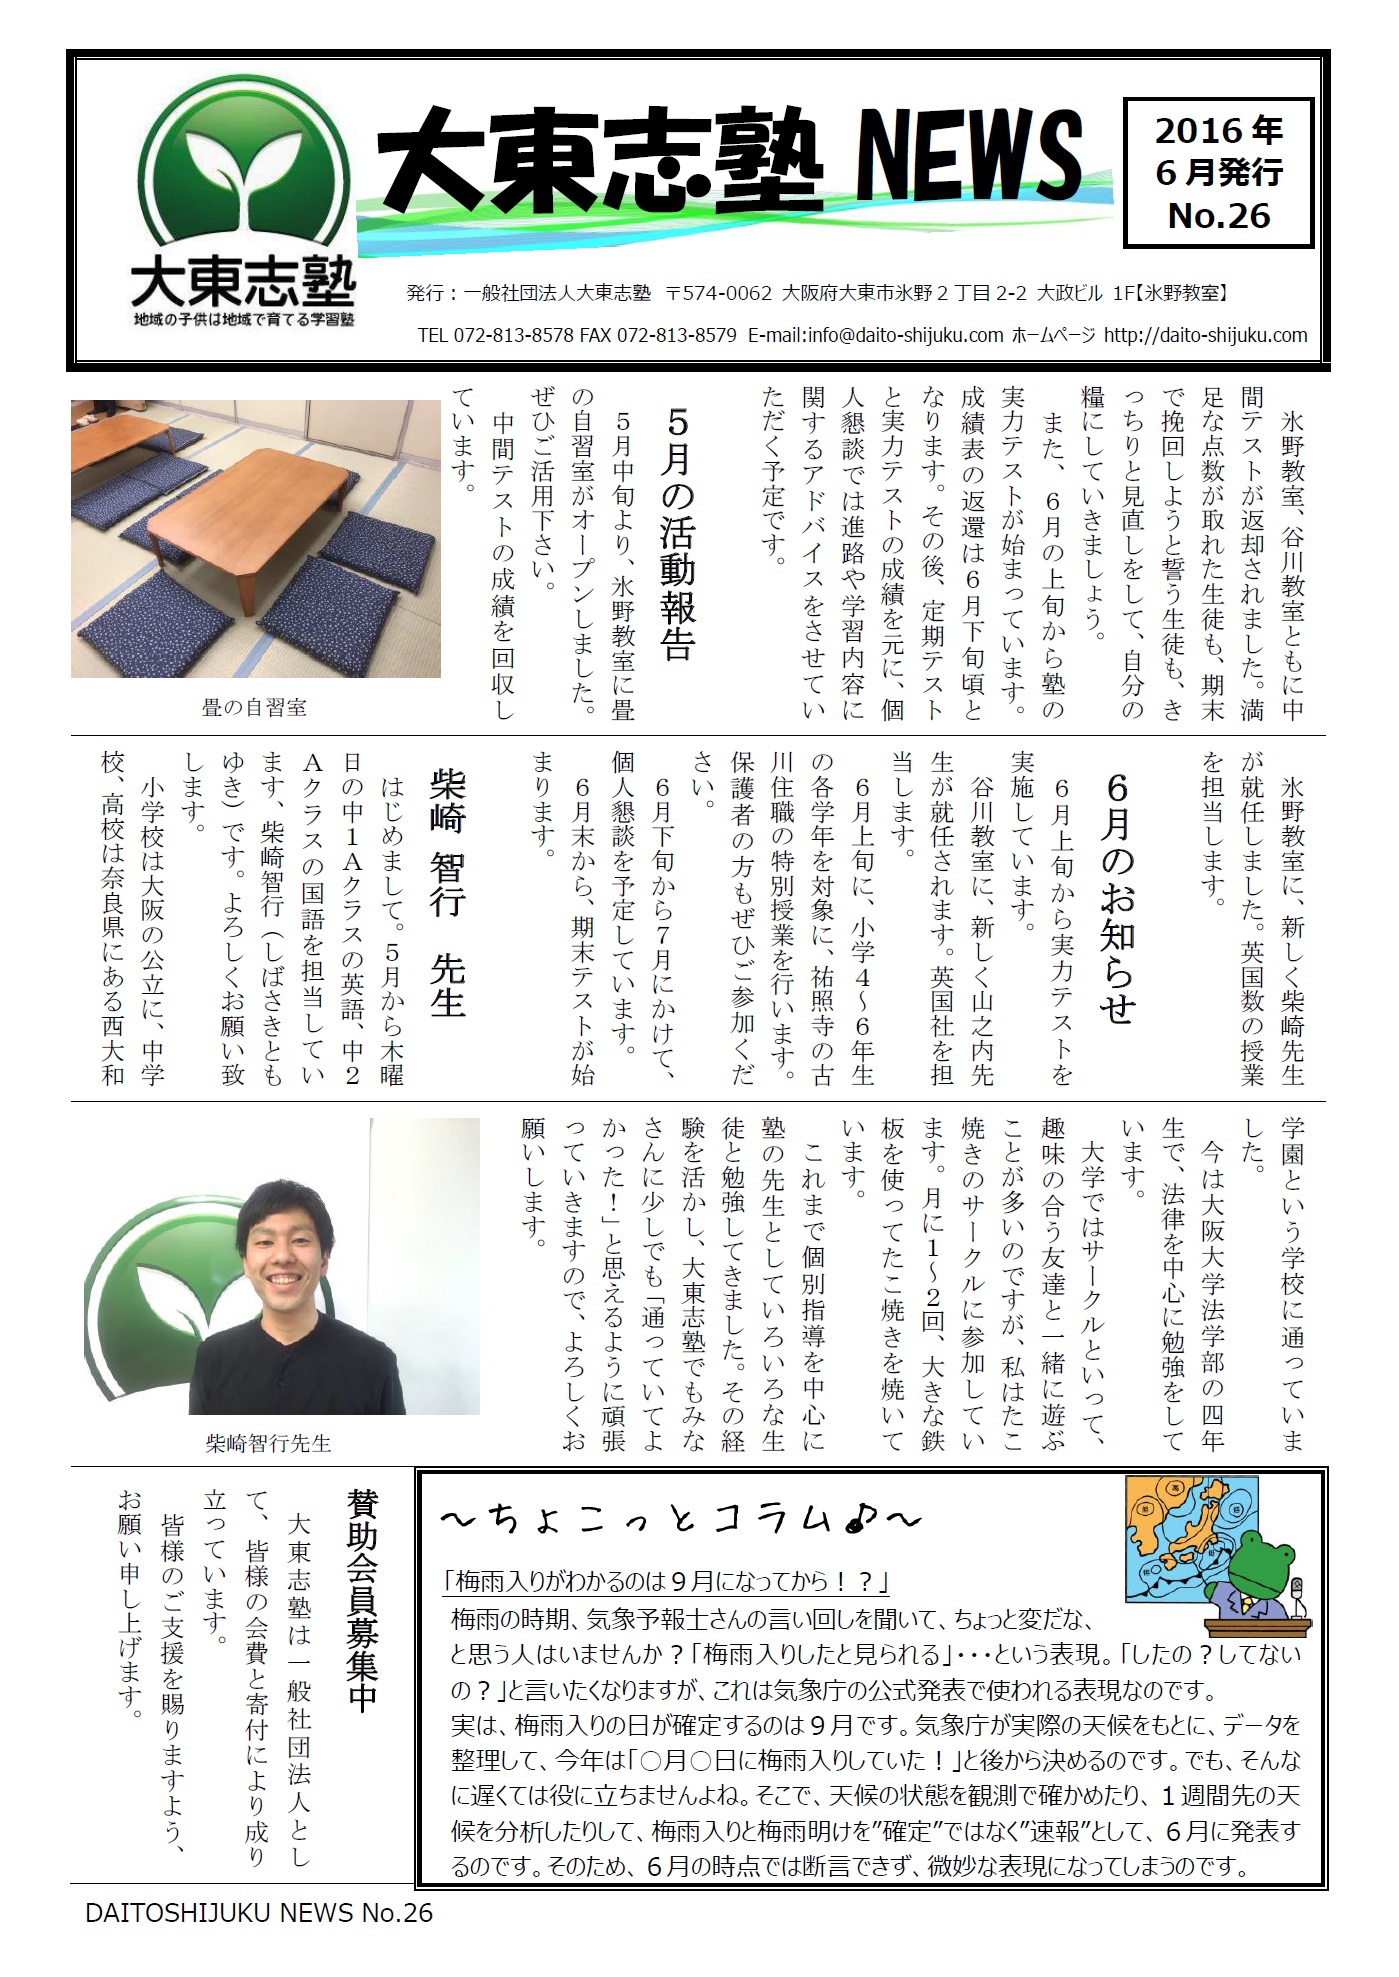 大東志塾NEWS No.26 (2016年6月)